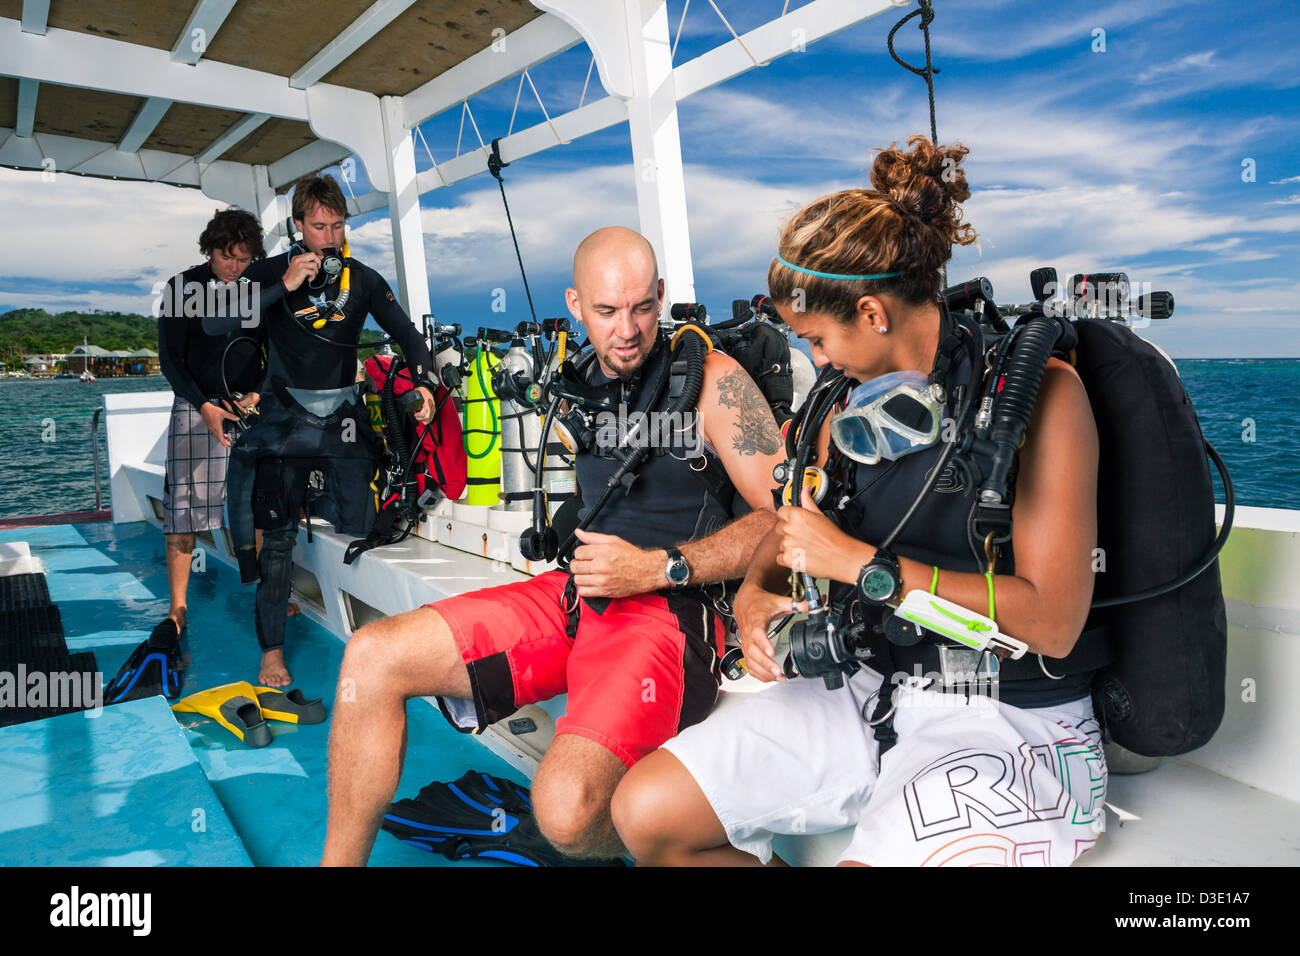 SCUBA divers prepare dive equipment on boat. Stock Photo